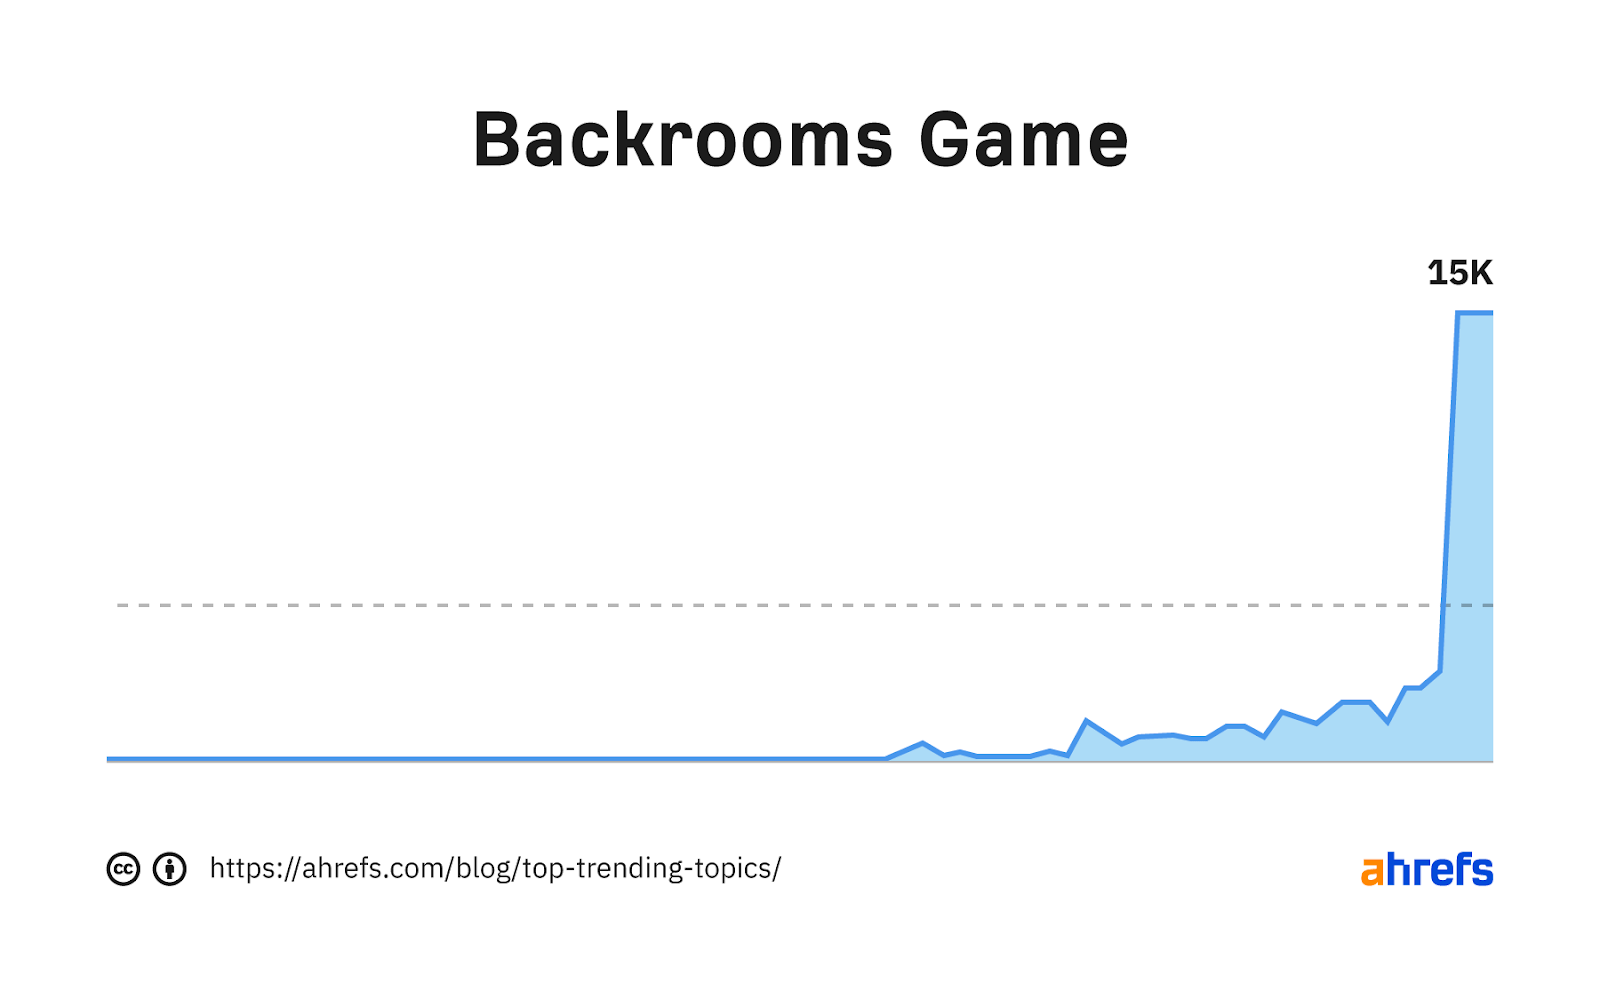 Gráfico de tendencia de la palabra clave "juego entre bastidores"